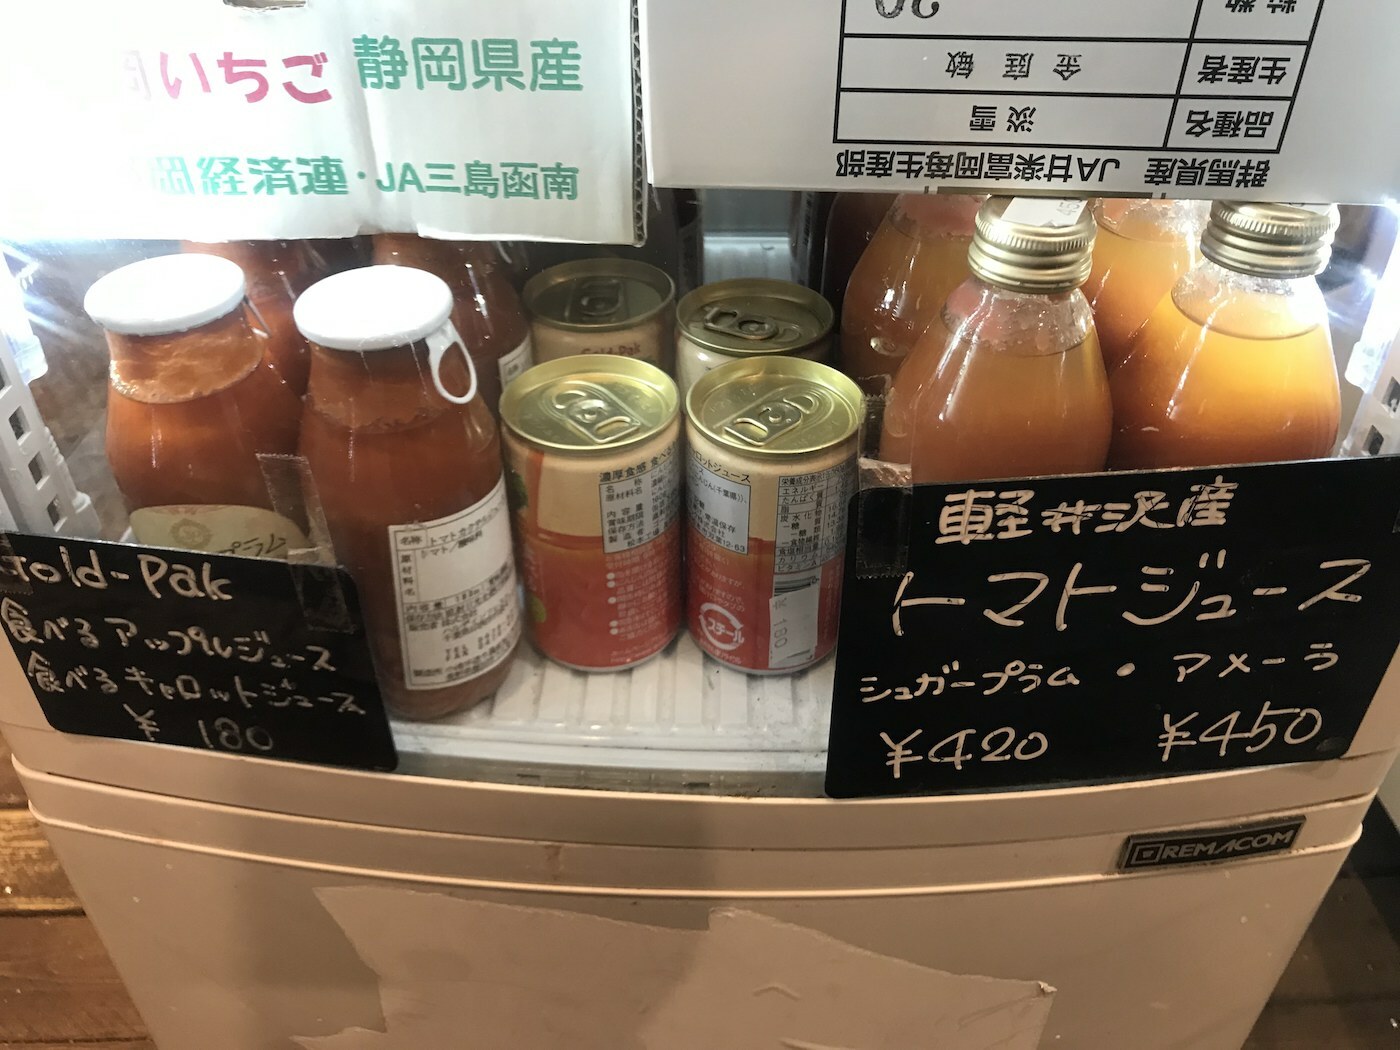 軽井沢産トマトジュース、アップルジュース、キャロットジュースは人気商品